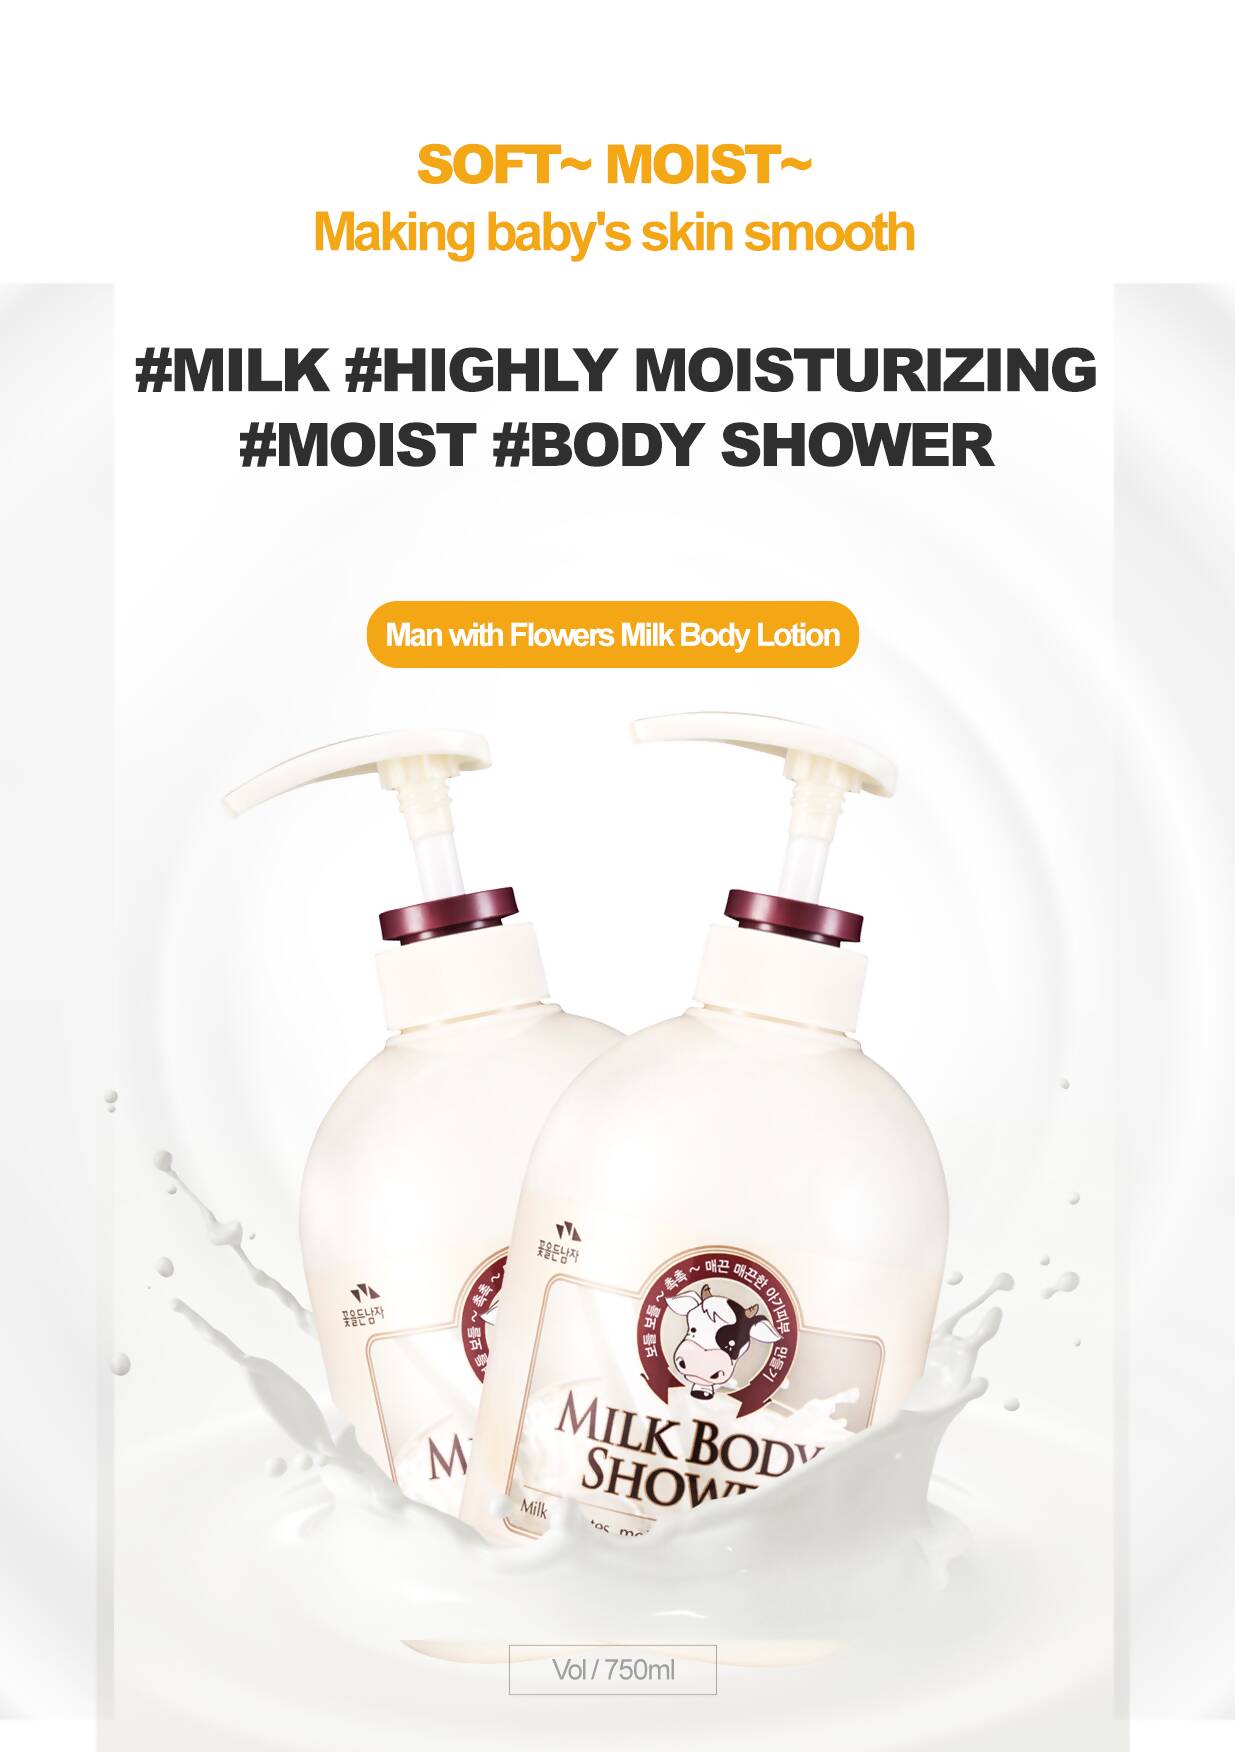 Somang Milk Body Shower 750 ml